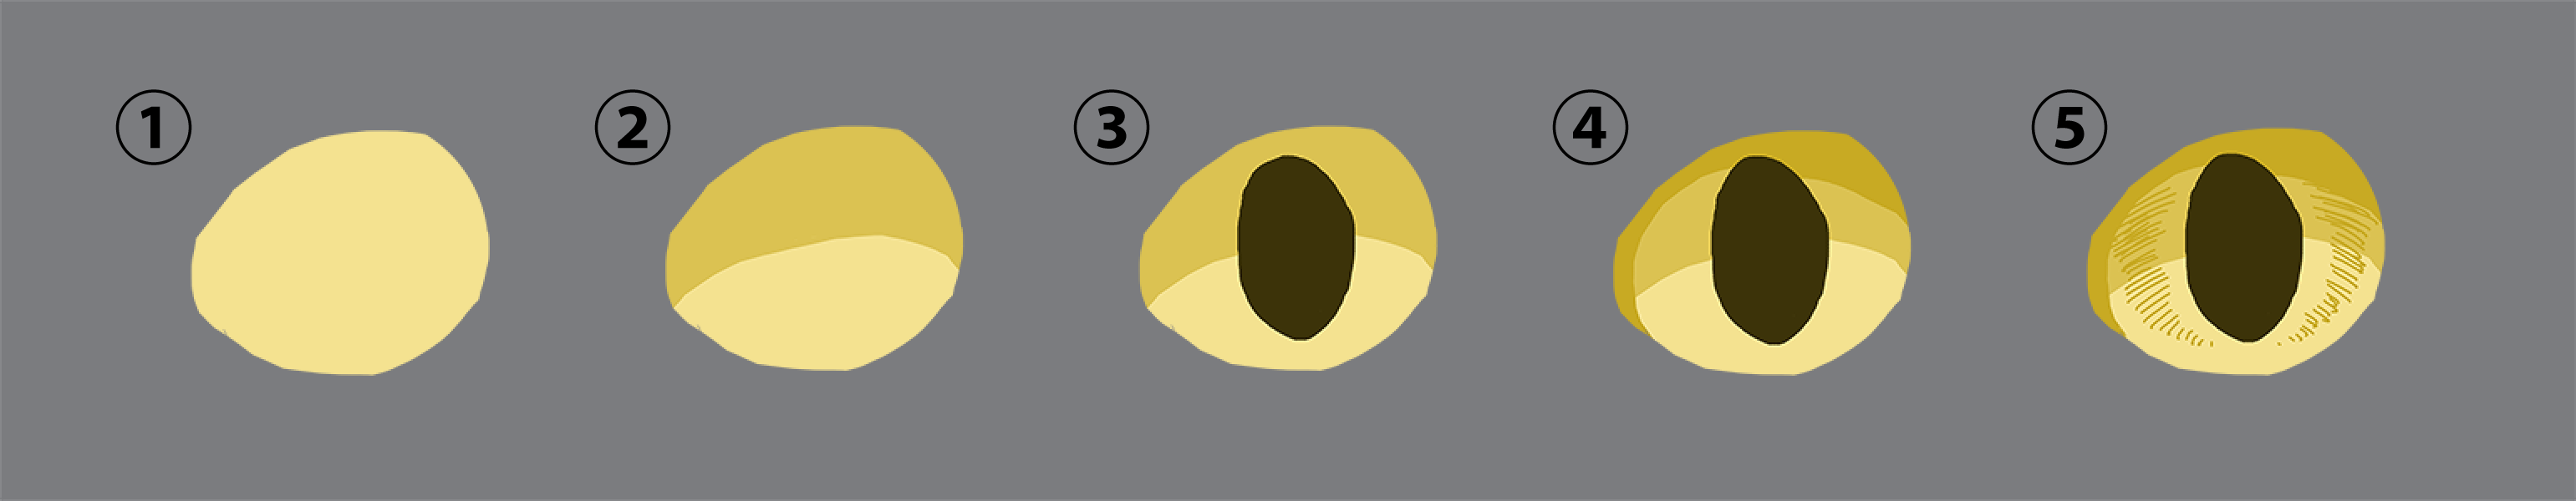 簡単にそれっぽい リアルな瞳 目 を描く方法 Sonicmoov Lab